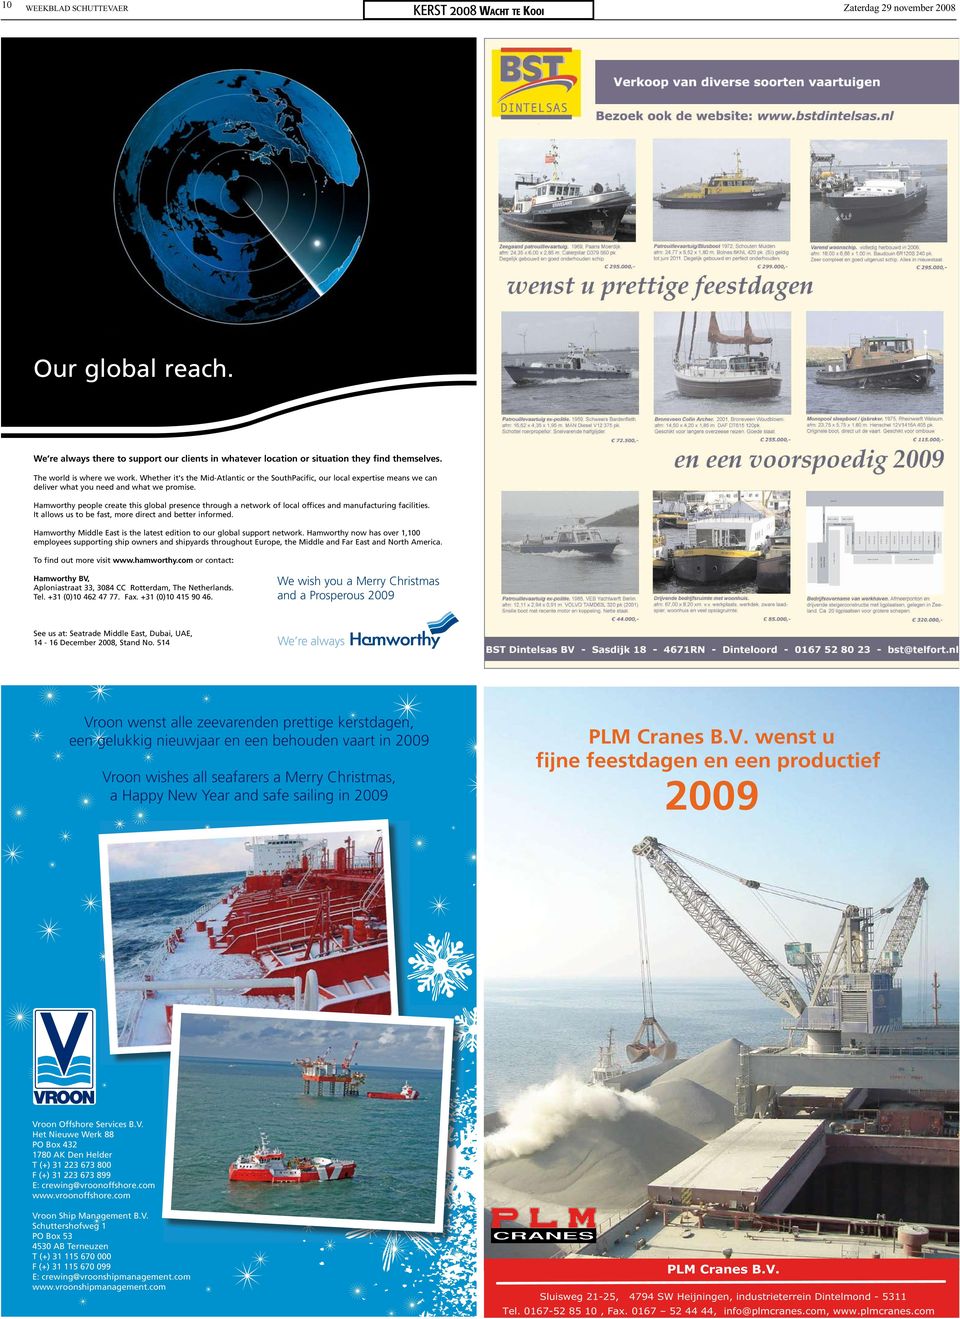 2009 PLM Cranes B.V. wenst u fijne feestdagen en een productief 2009 Vroon Offshore Services B.V. Het Nieuwe Werk 88 PO Box 432 1780 AK Den Helder T (+) 31 223 673 800 F (+) 31 223 673 899 E: crewing@vroonoffshore.